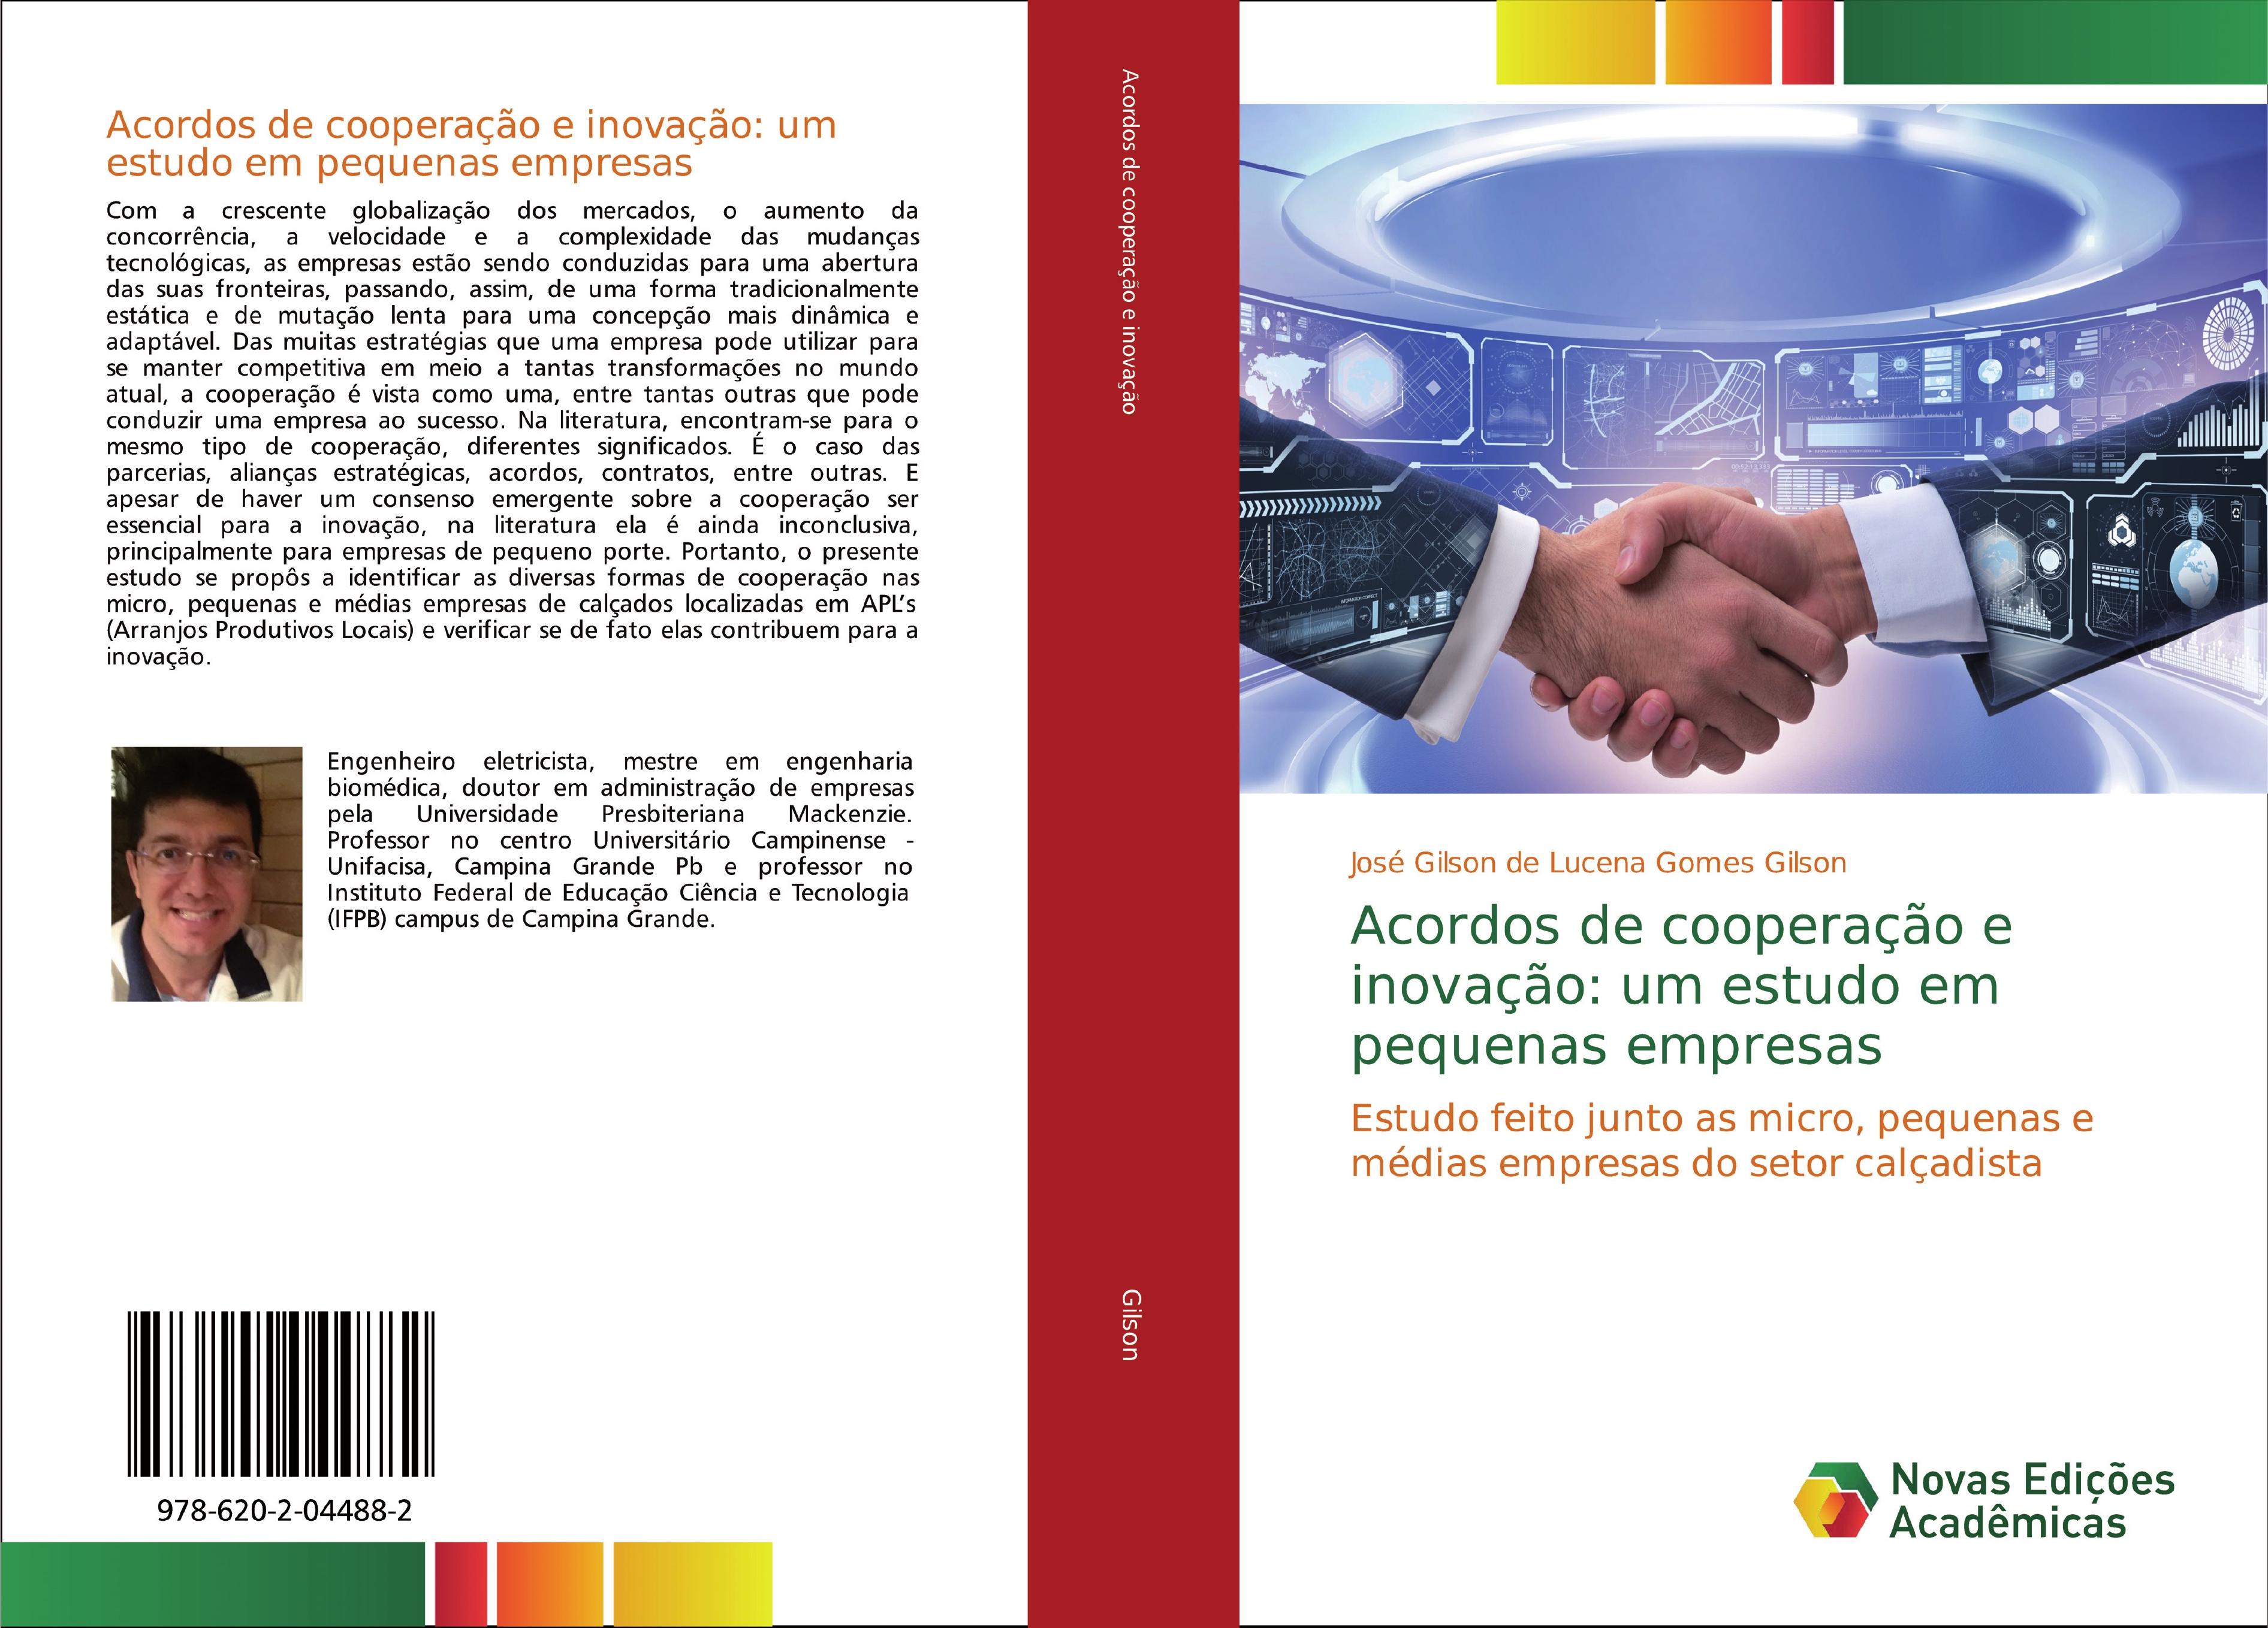 Acordos de cooperação e inovação: um estudo em pequenas empresas - José Gilson de Lucena Gomes Gilson